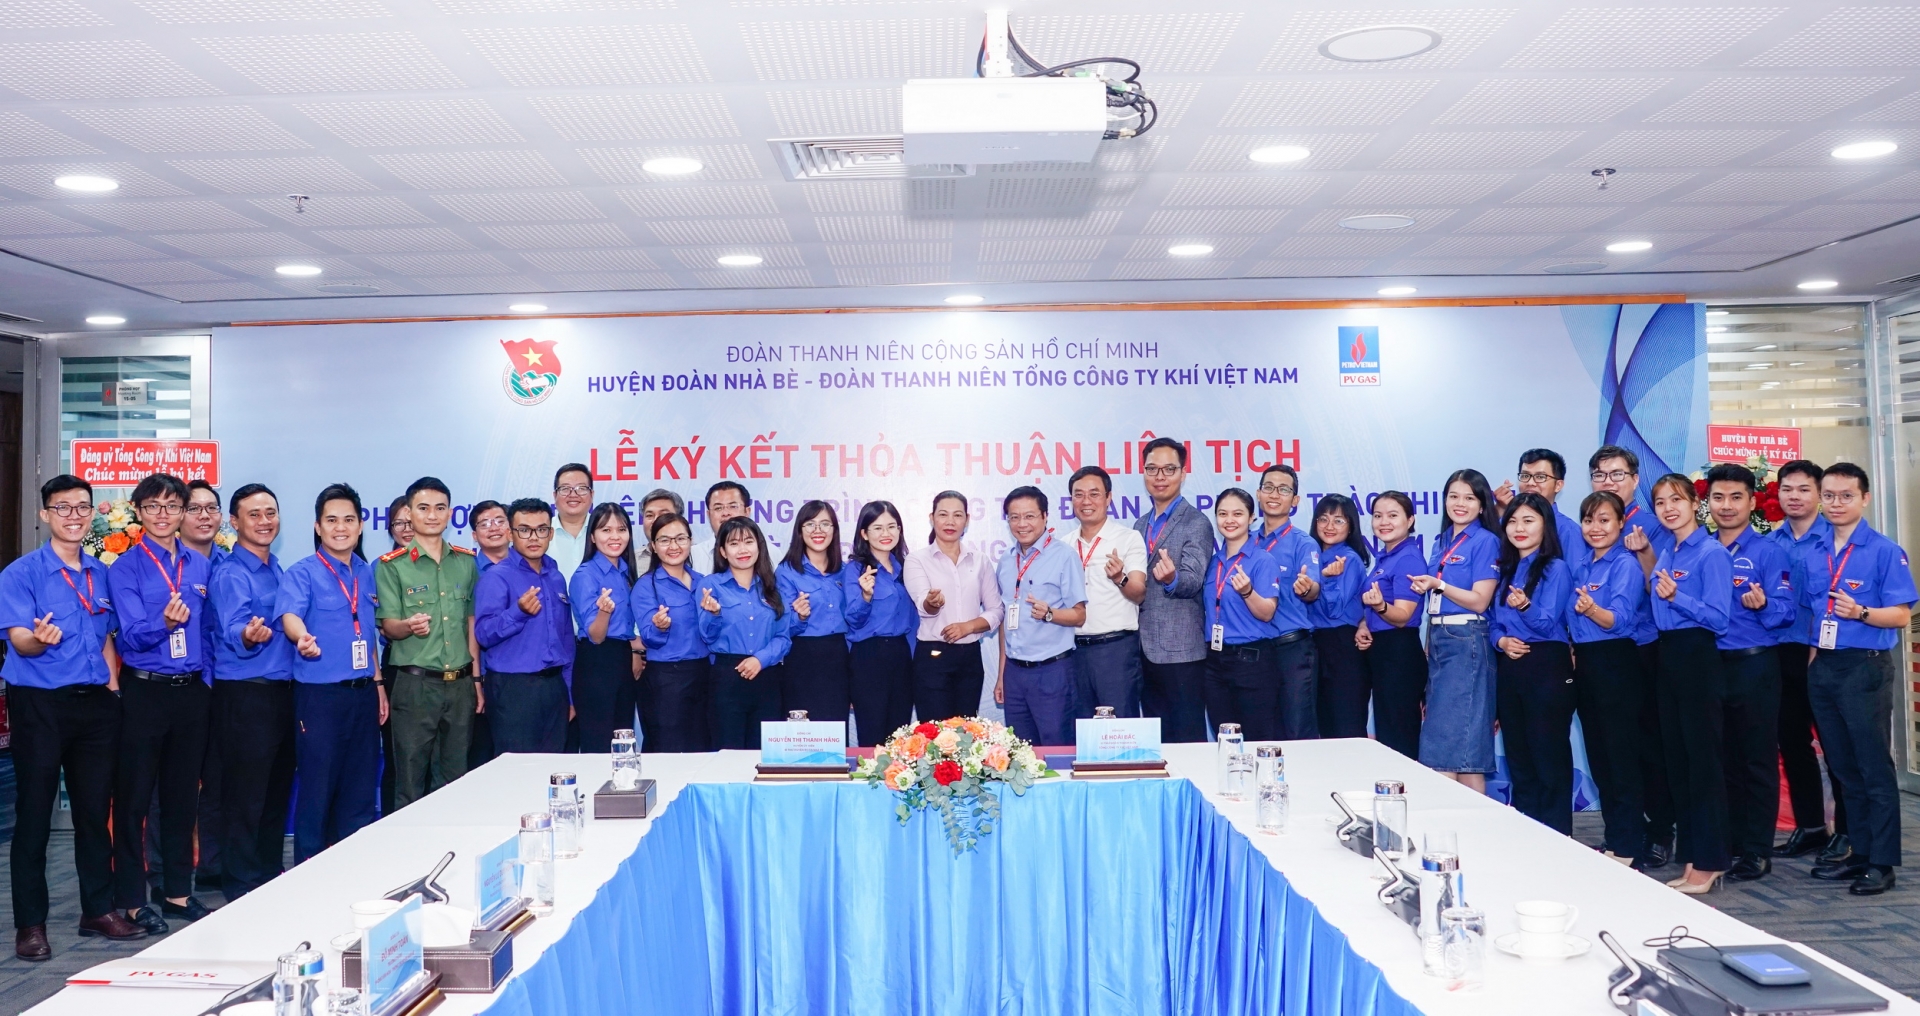 Lễ ký kết thỏa thuận liên tịch giữa Đoàn Thanh niên Tổng Công ty Khí Việt Nam và huyện Đoàn Nhà Bè